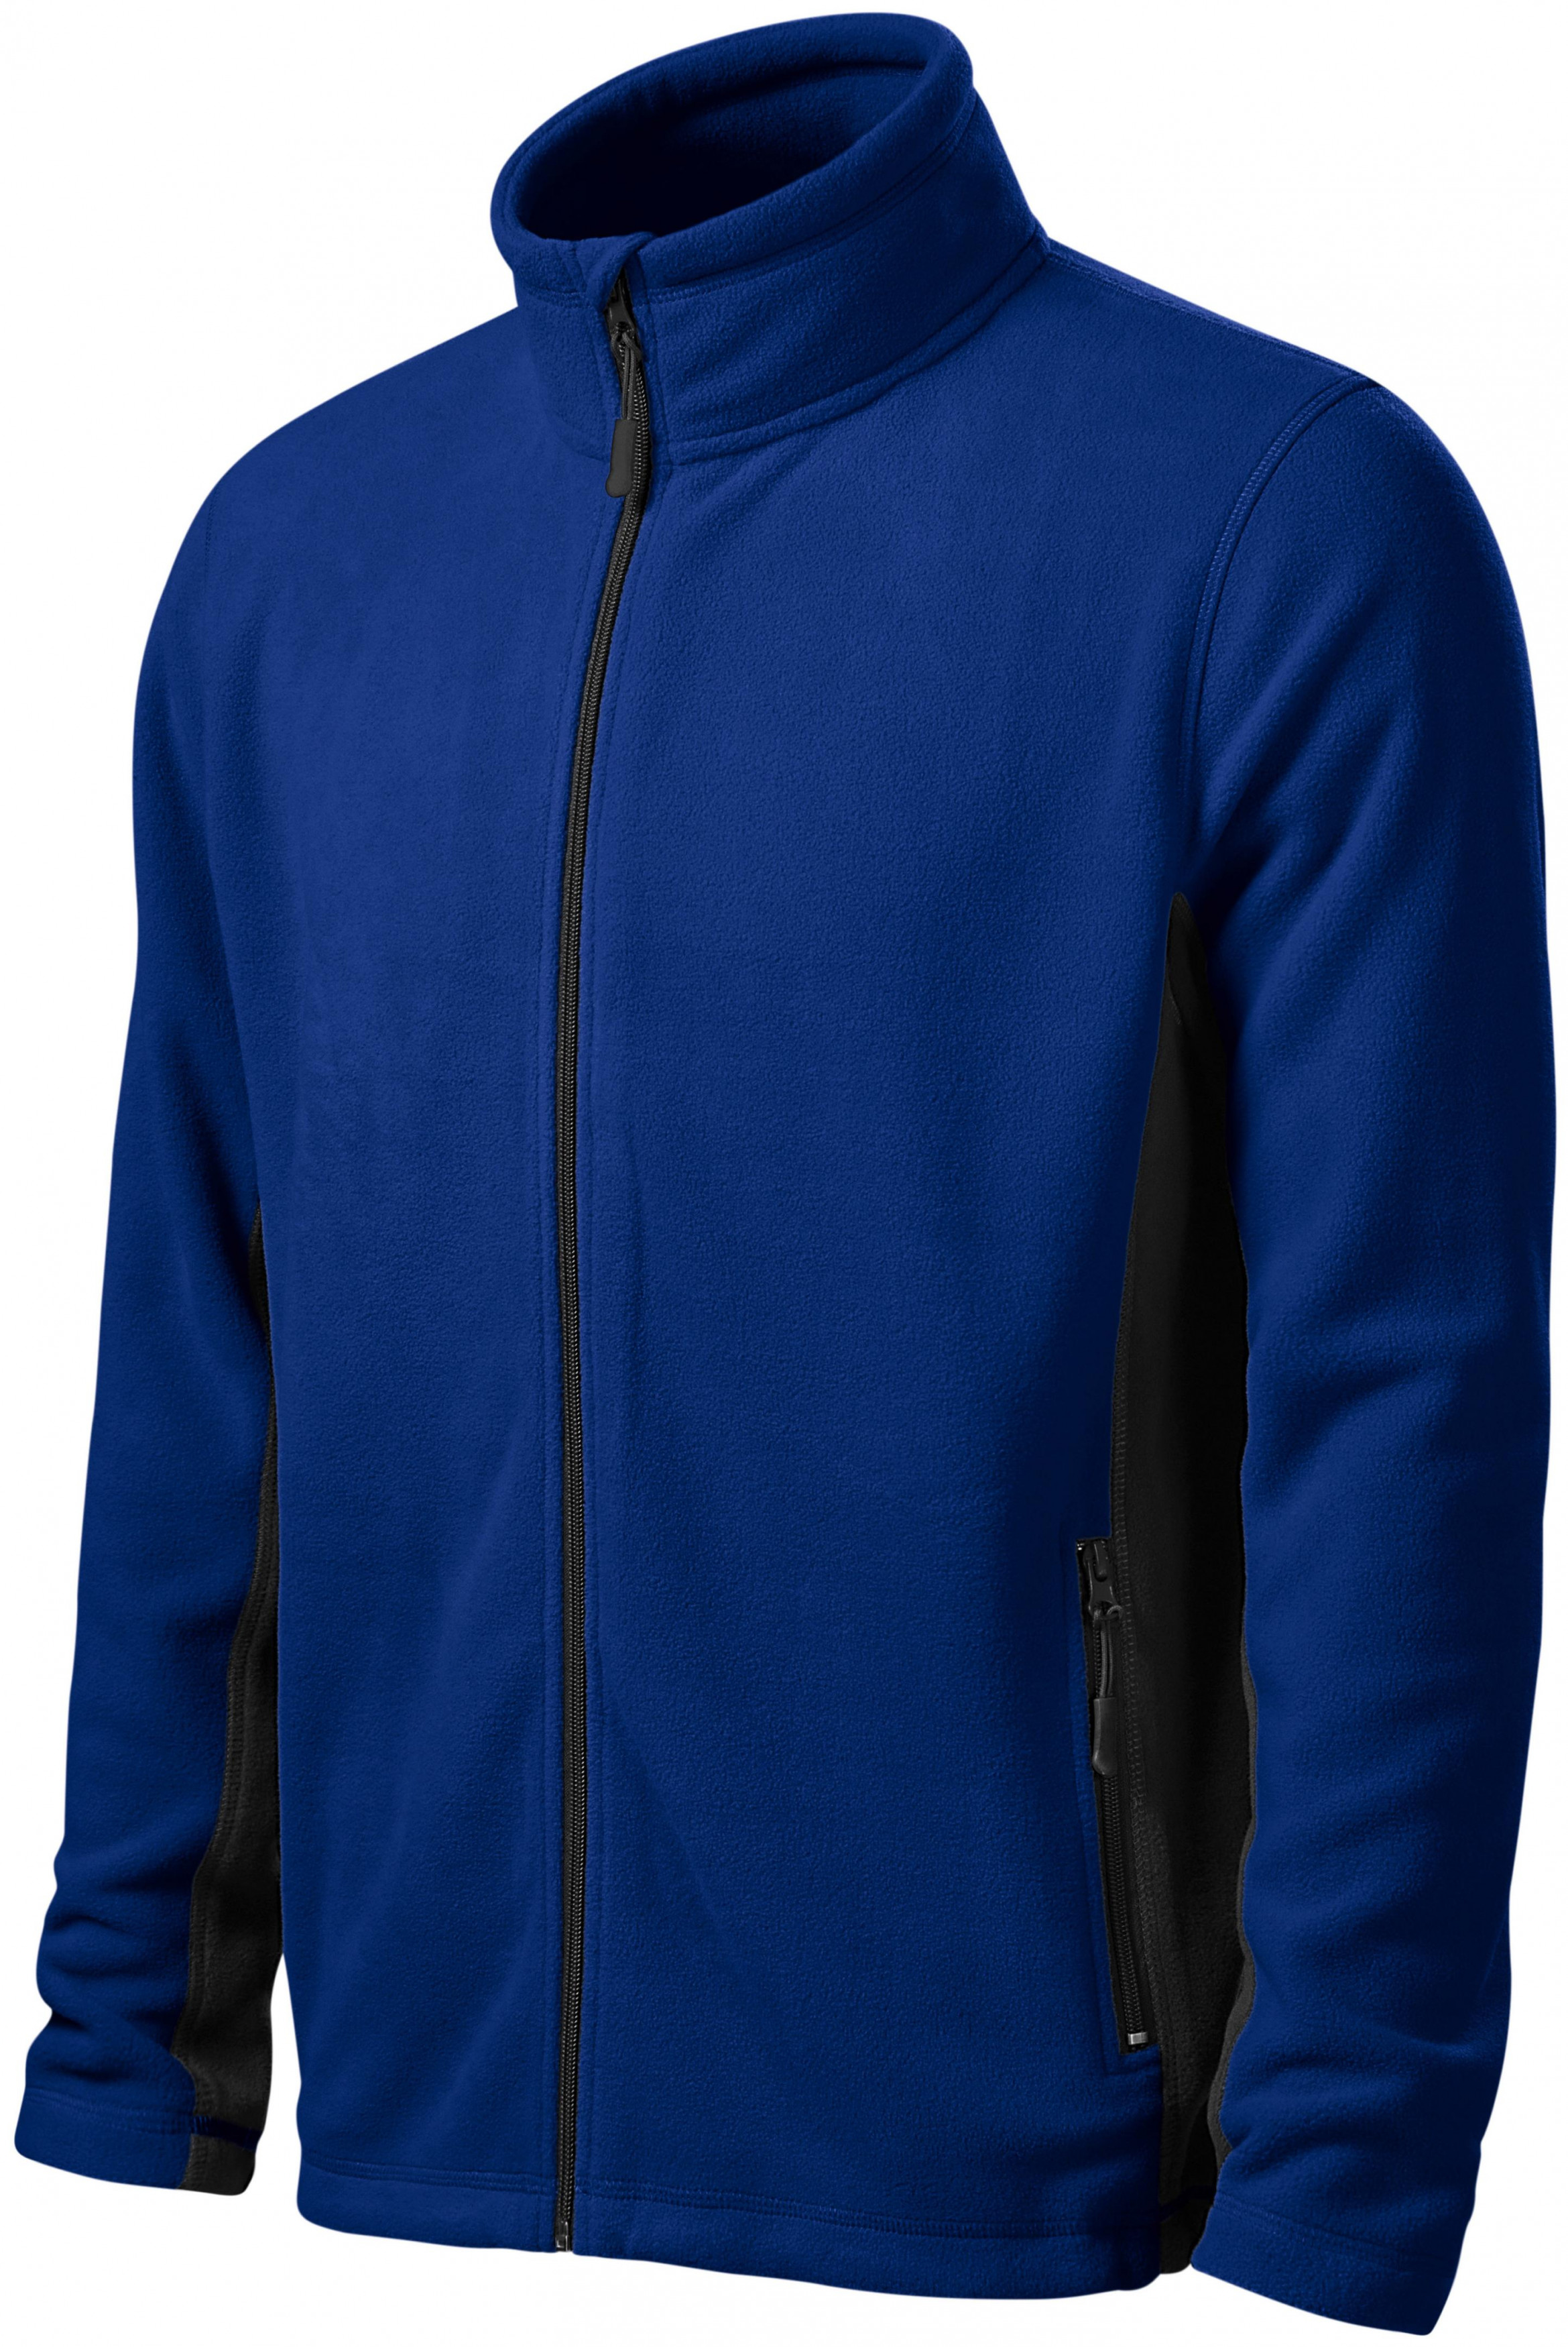 Pánska fleecová bunda kontrastná, kráľovská modrá, 2XL